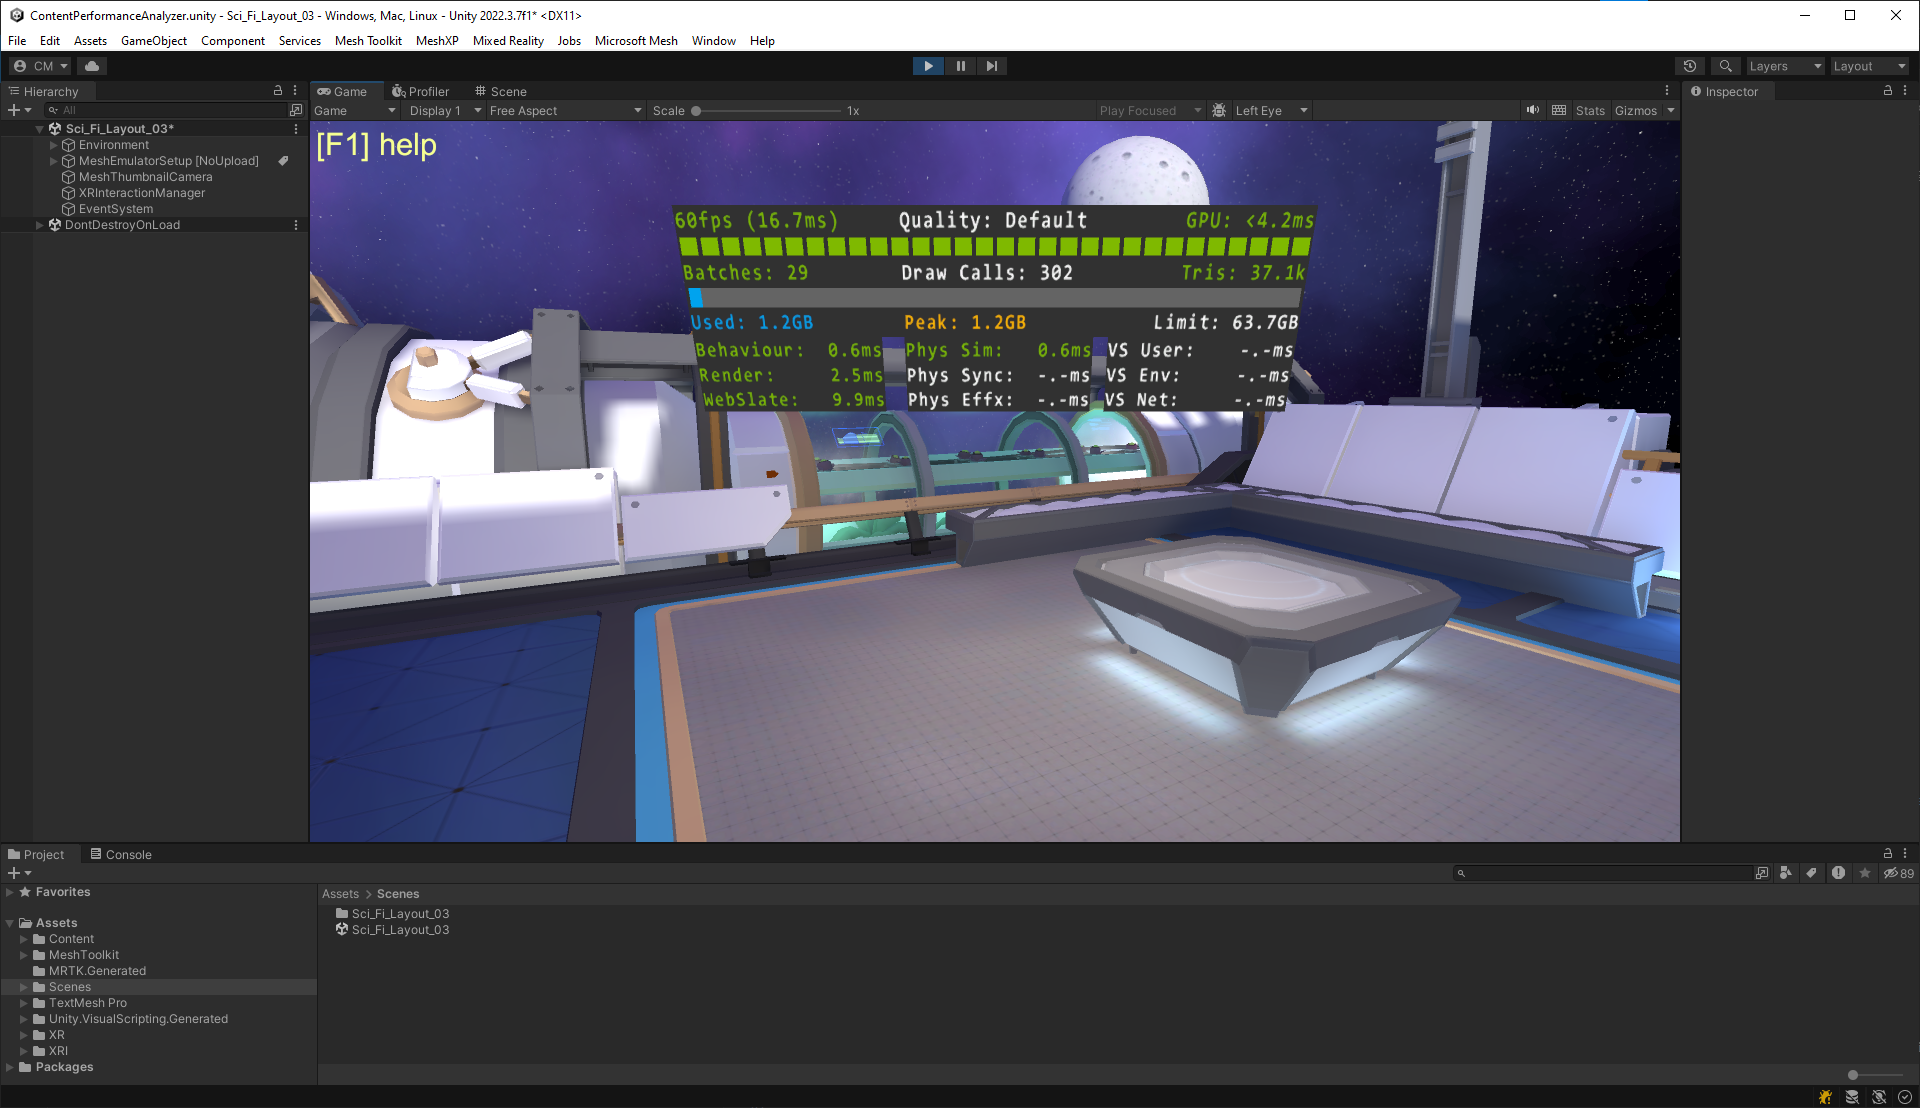 Captura de pantalla del generador de perfiles de rendimiento en el editor de Unity